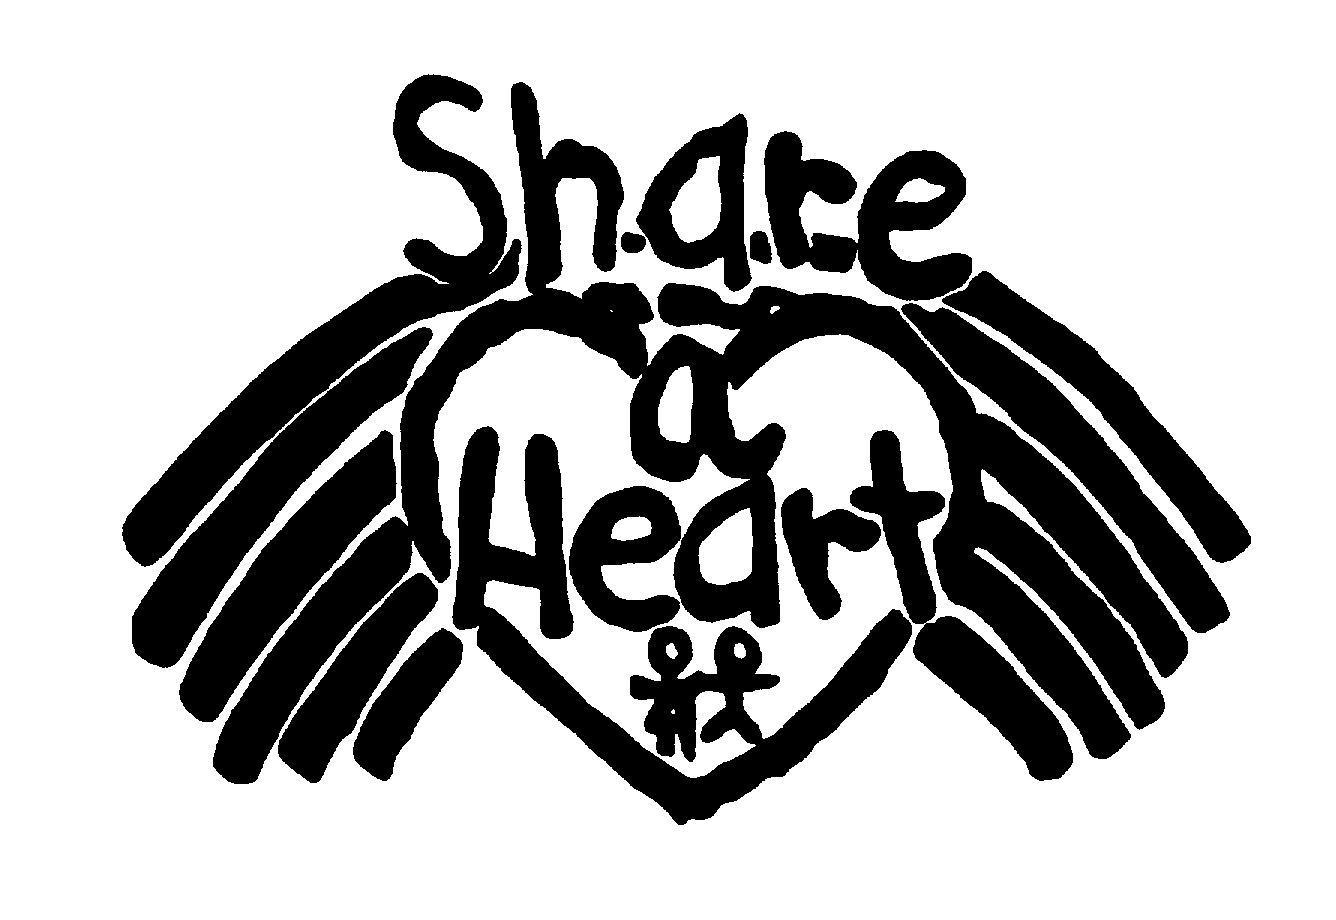  SH.A.R.E A HEART